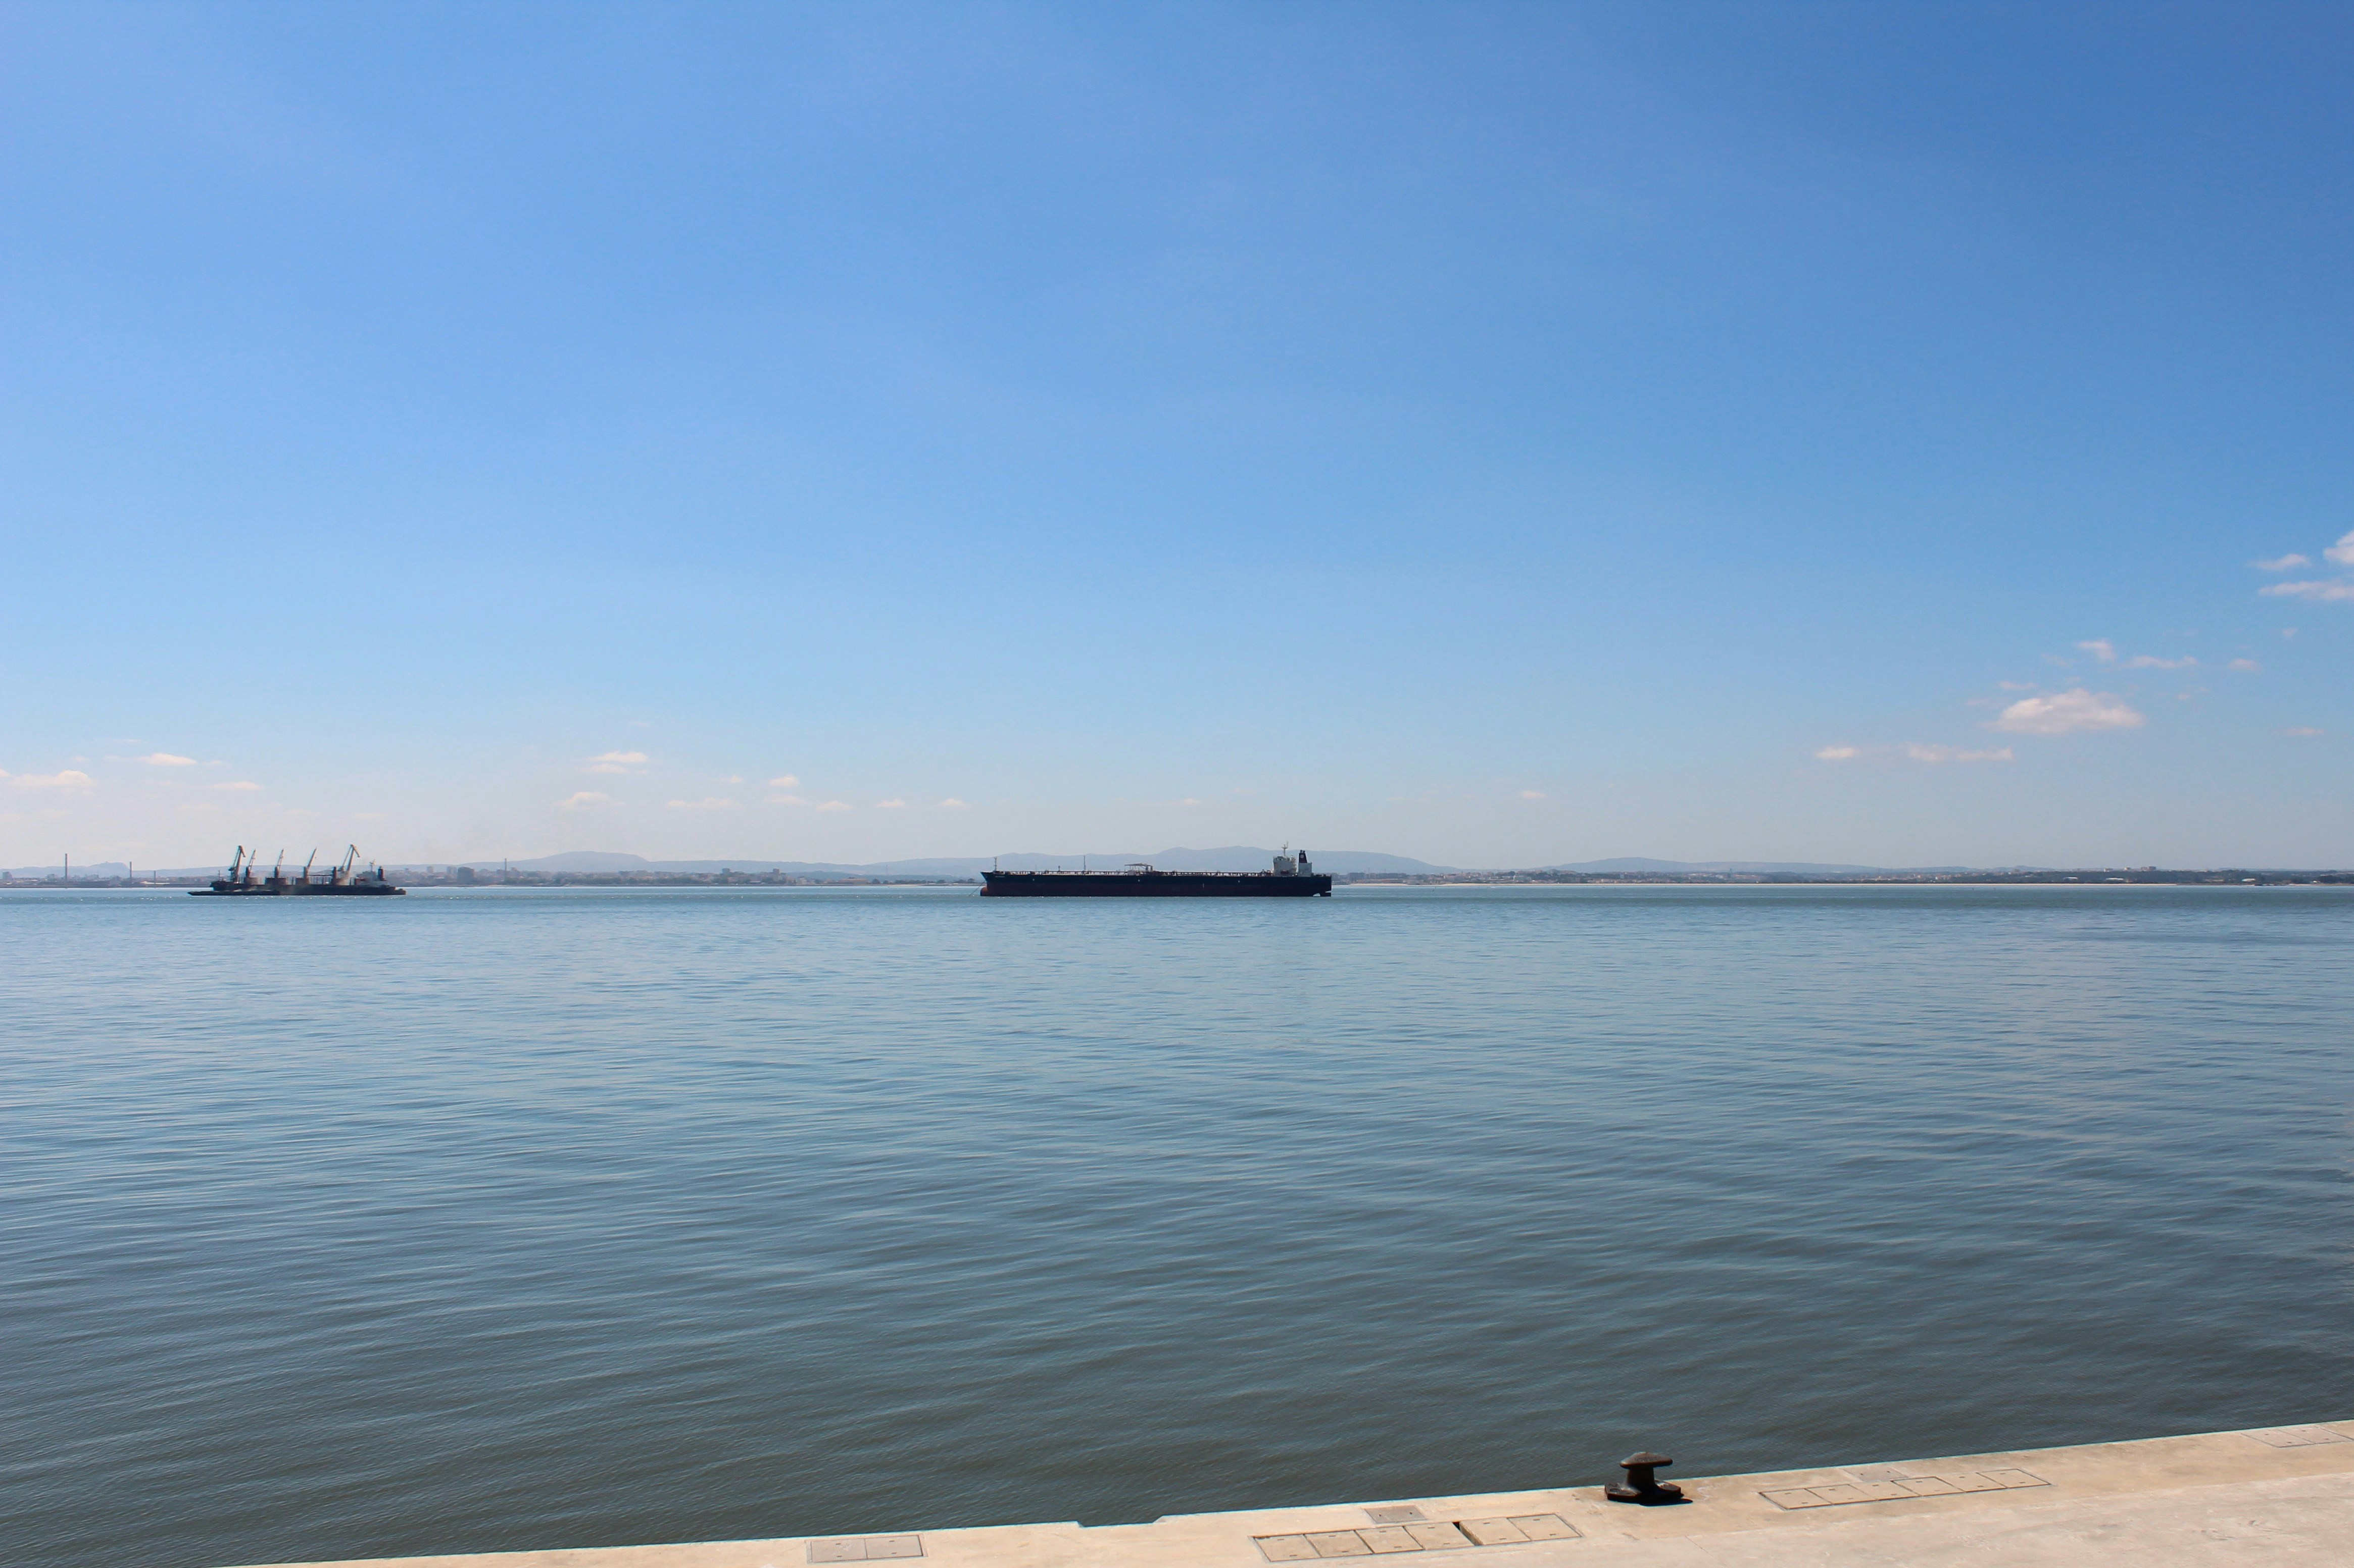 View of the Tagus River from the Carrilho da Graça designed Lisbon Cruiseship Terminal.